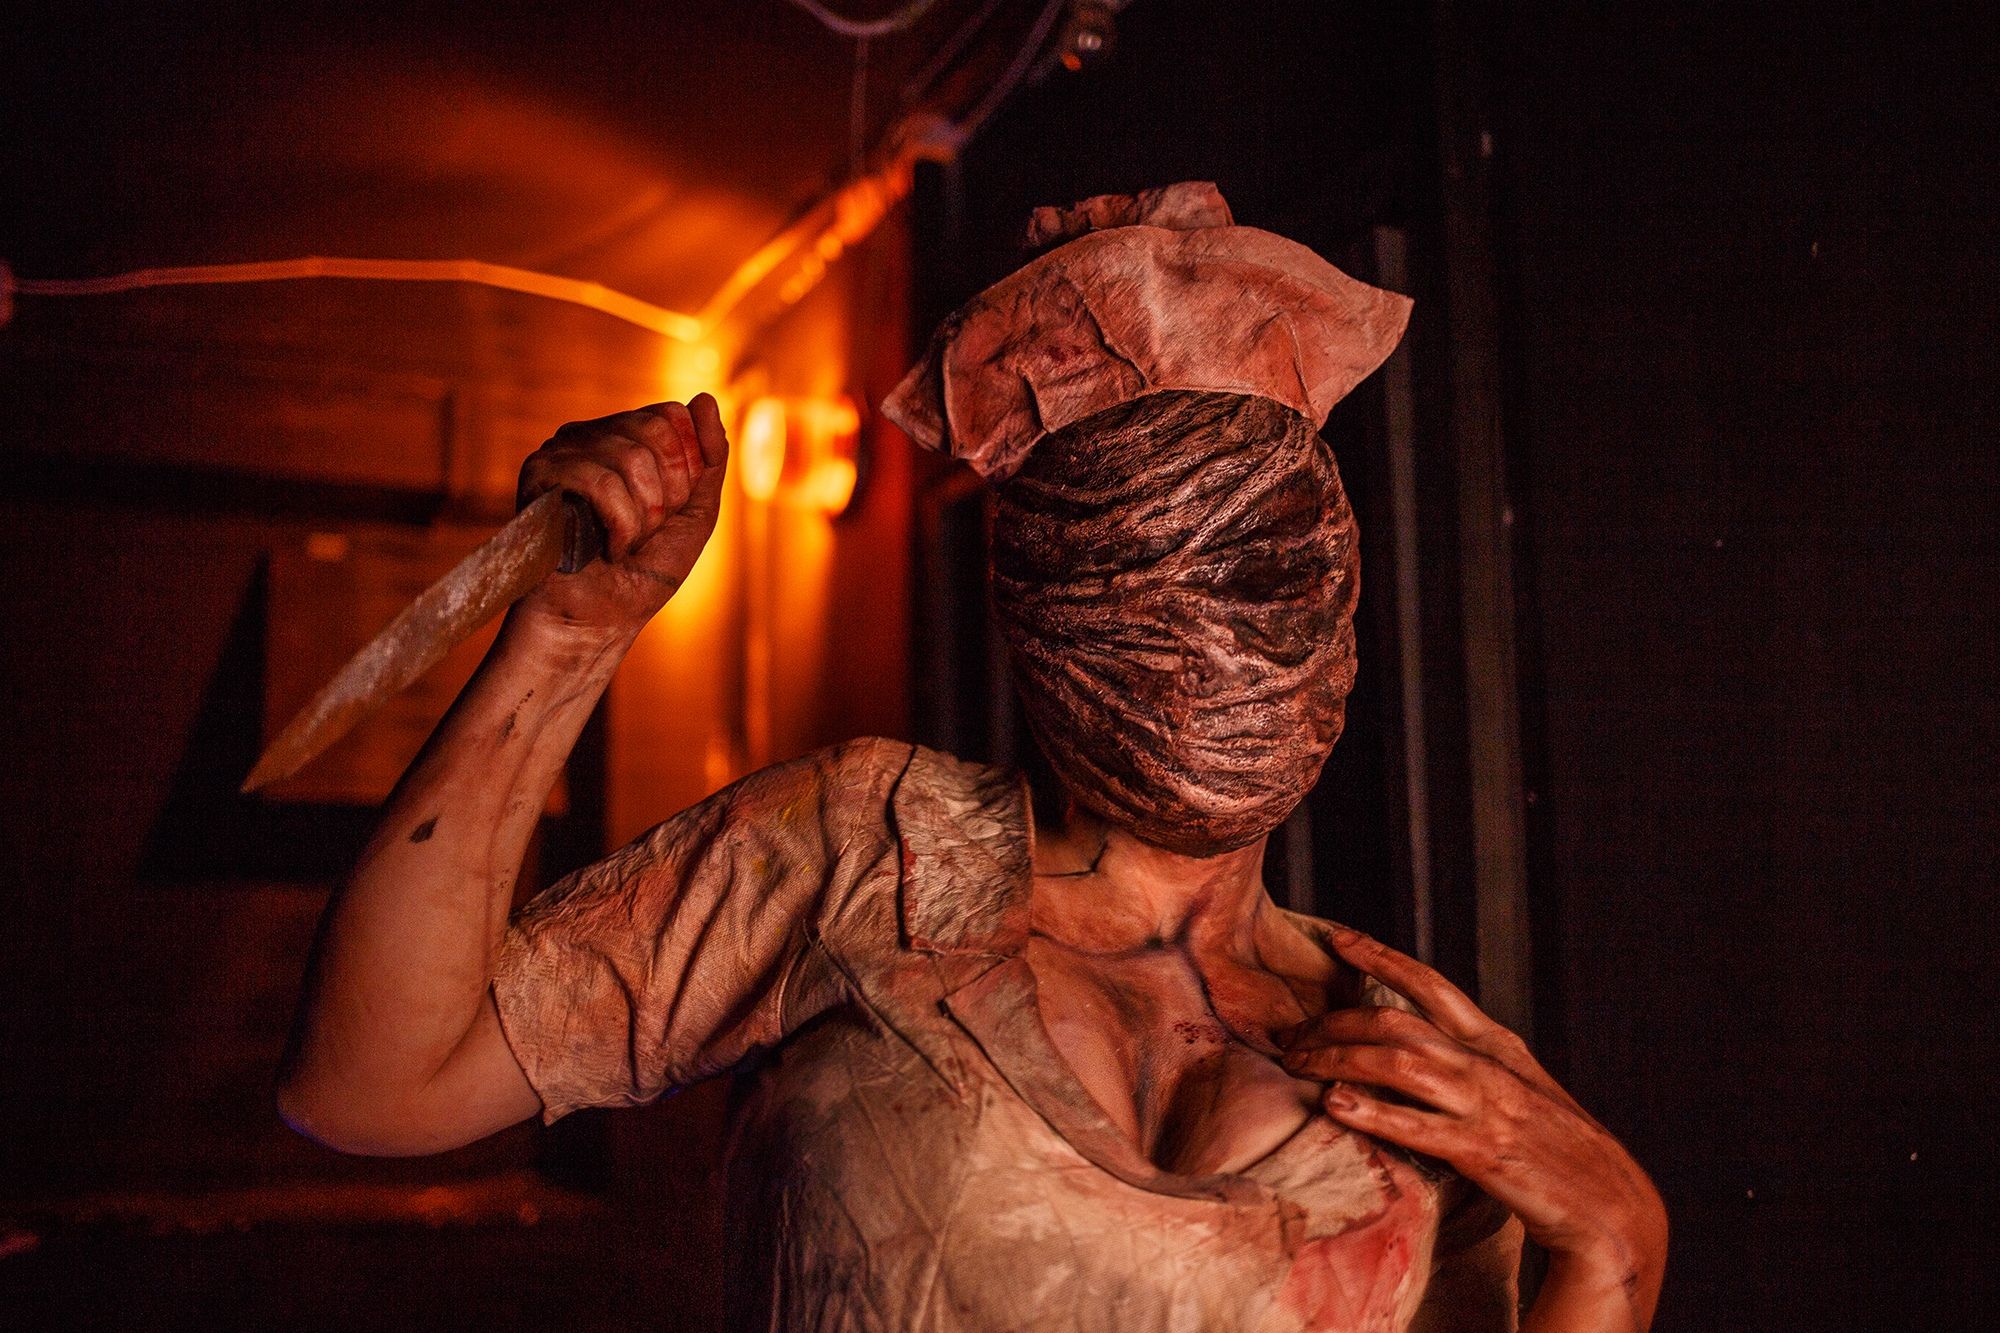 Медсестра из Silent Hill. Косплеер: Алиса Арефьева. Фотограф: Евгений Накрышский. Источник: vk.com/fillakteriart